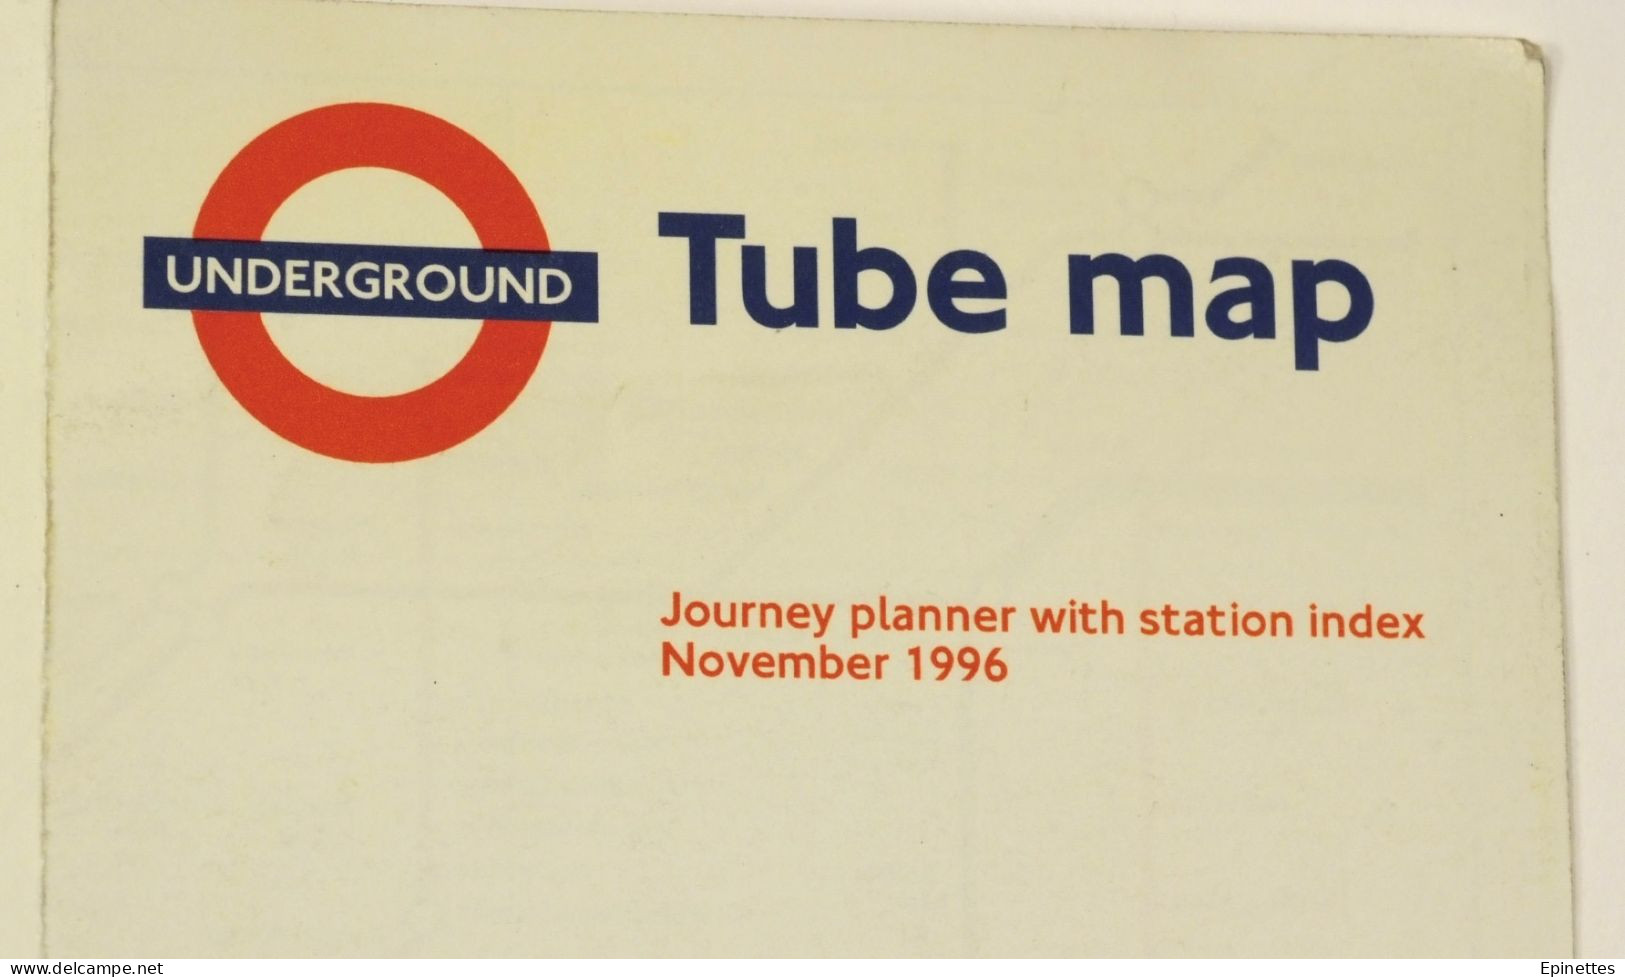 Petit plan dépliant, métro de Londres 1996 - London Tube Map, Underground, London Transport